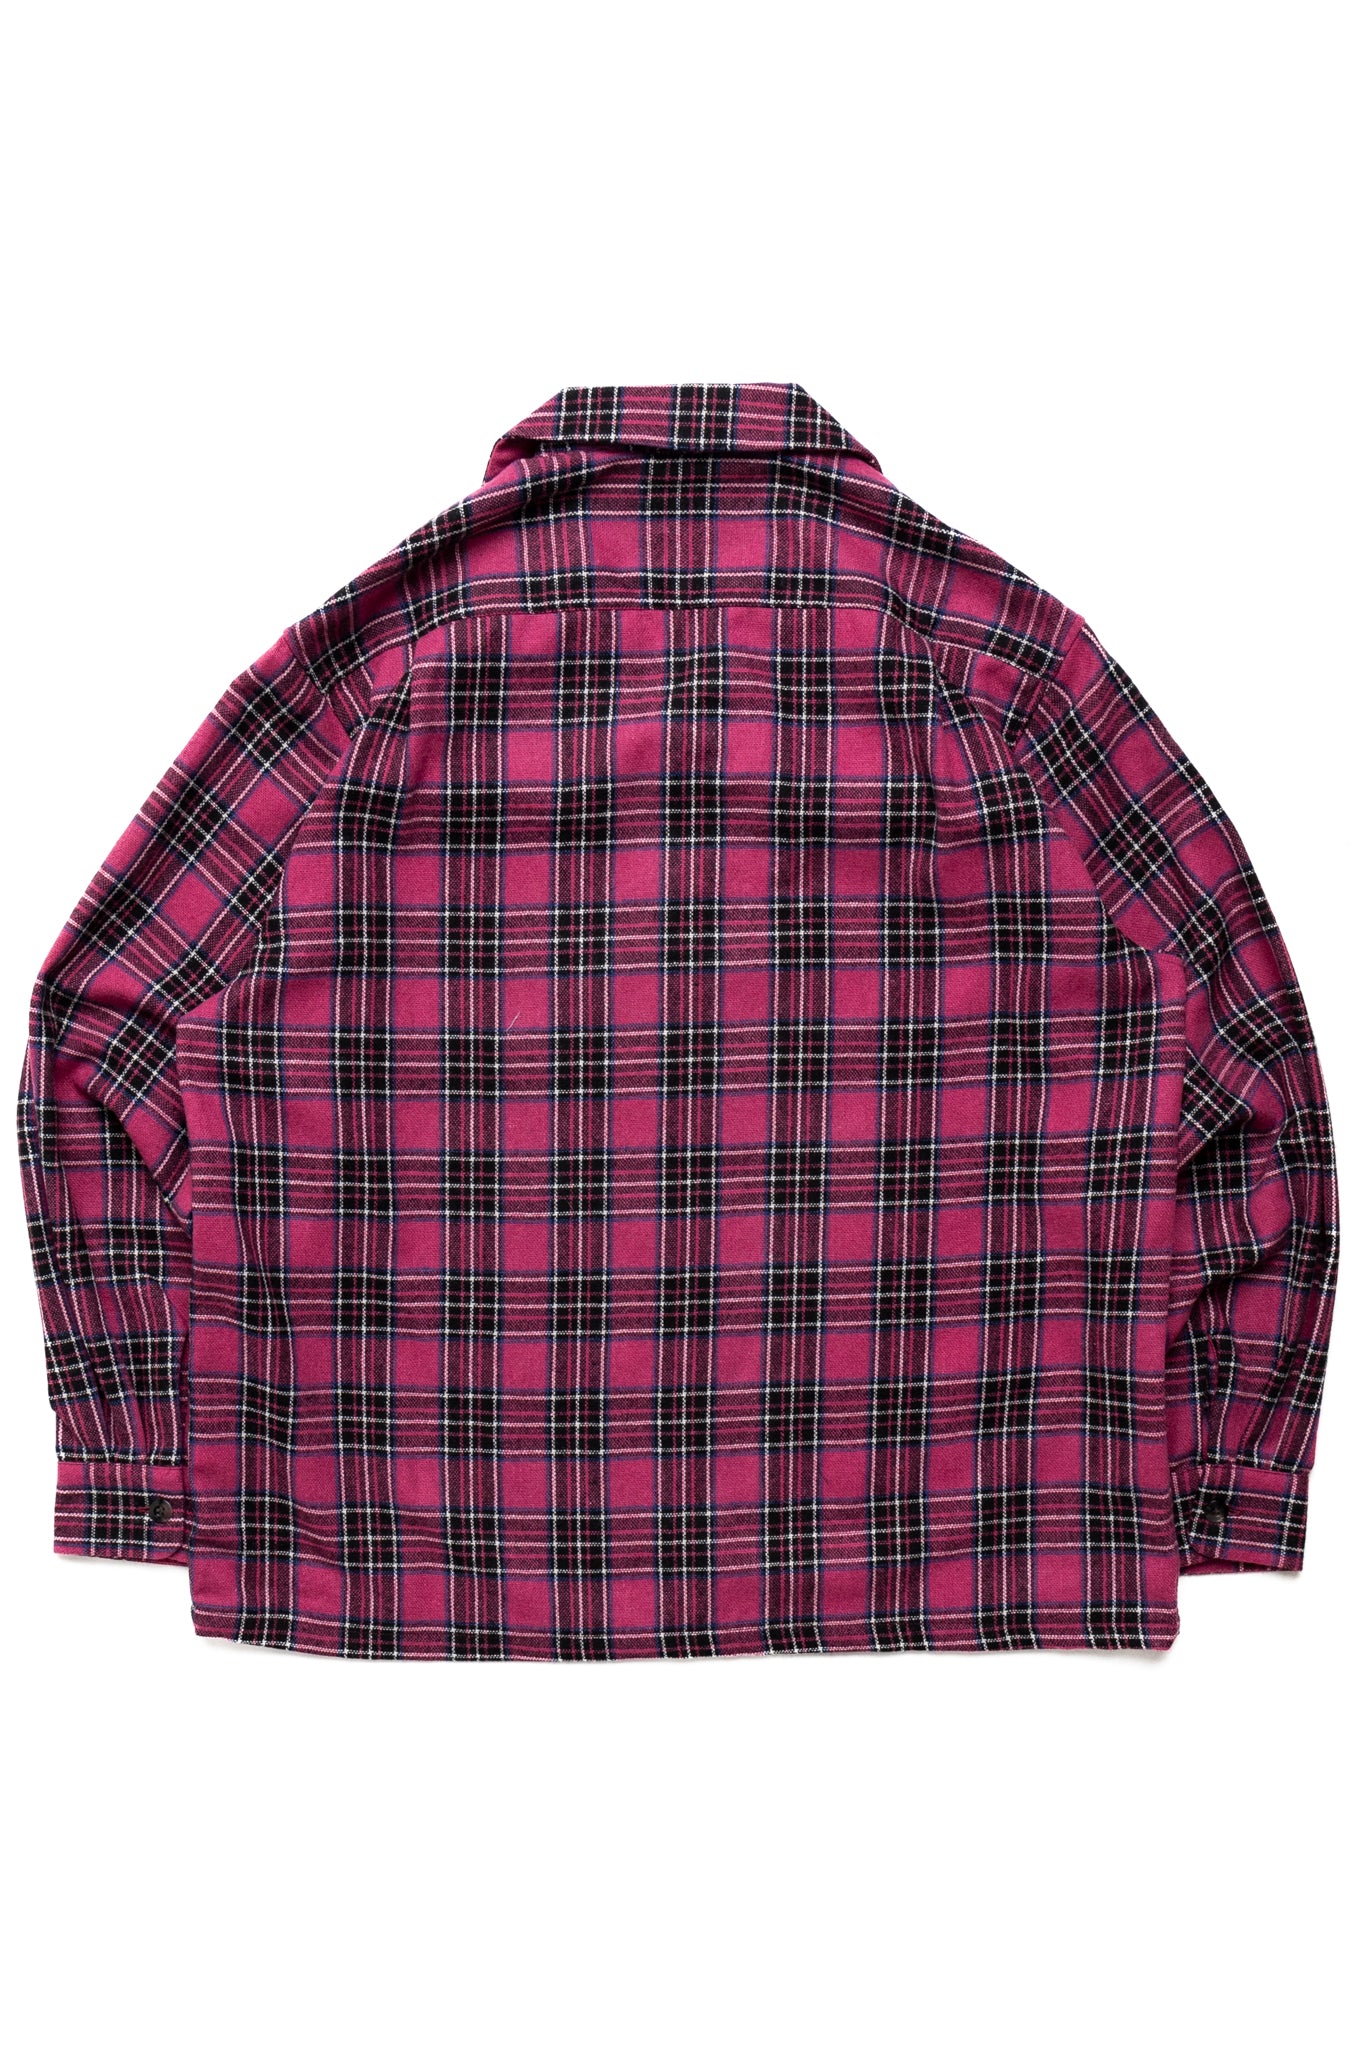 Wool Check Board Shirt - Pink